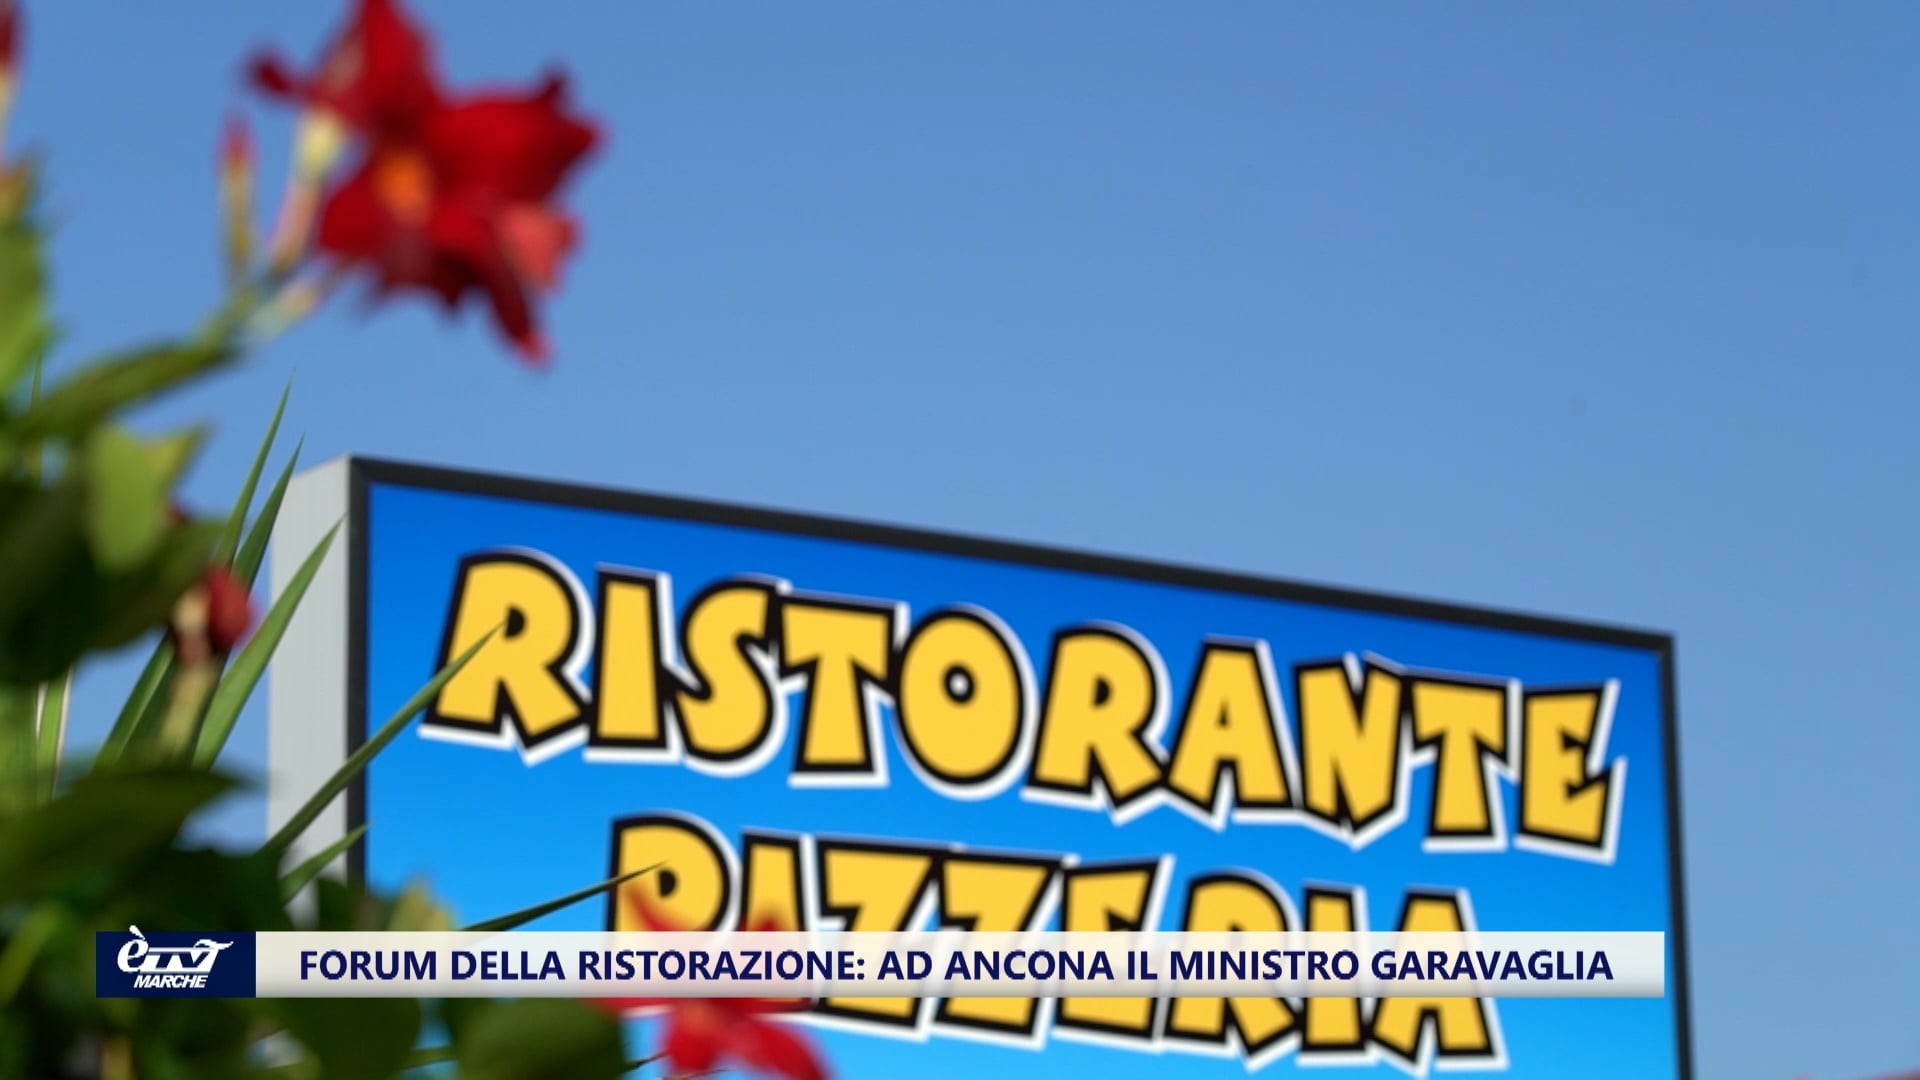 Forum della ristorazione: ad Ancona arriva il Ministro Garavaglia